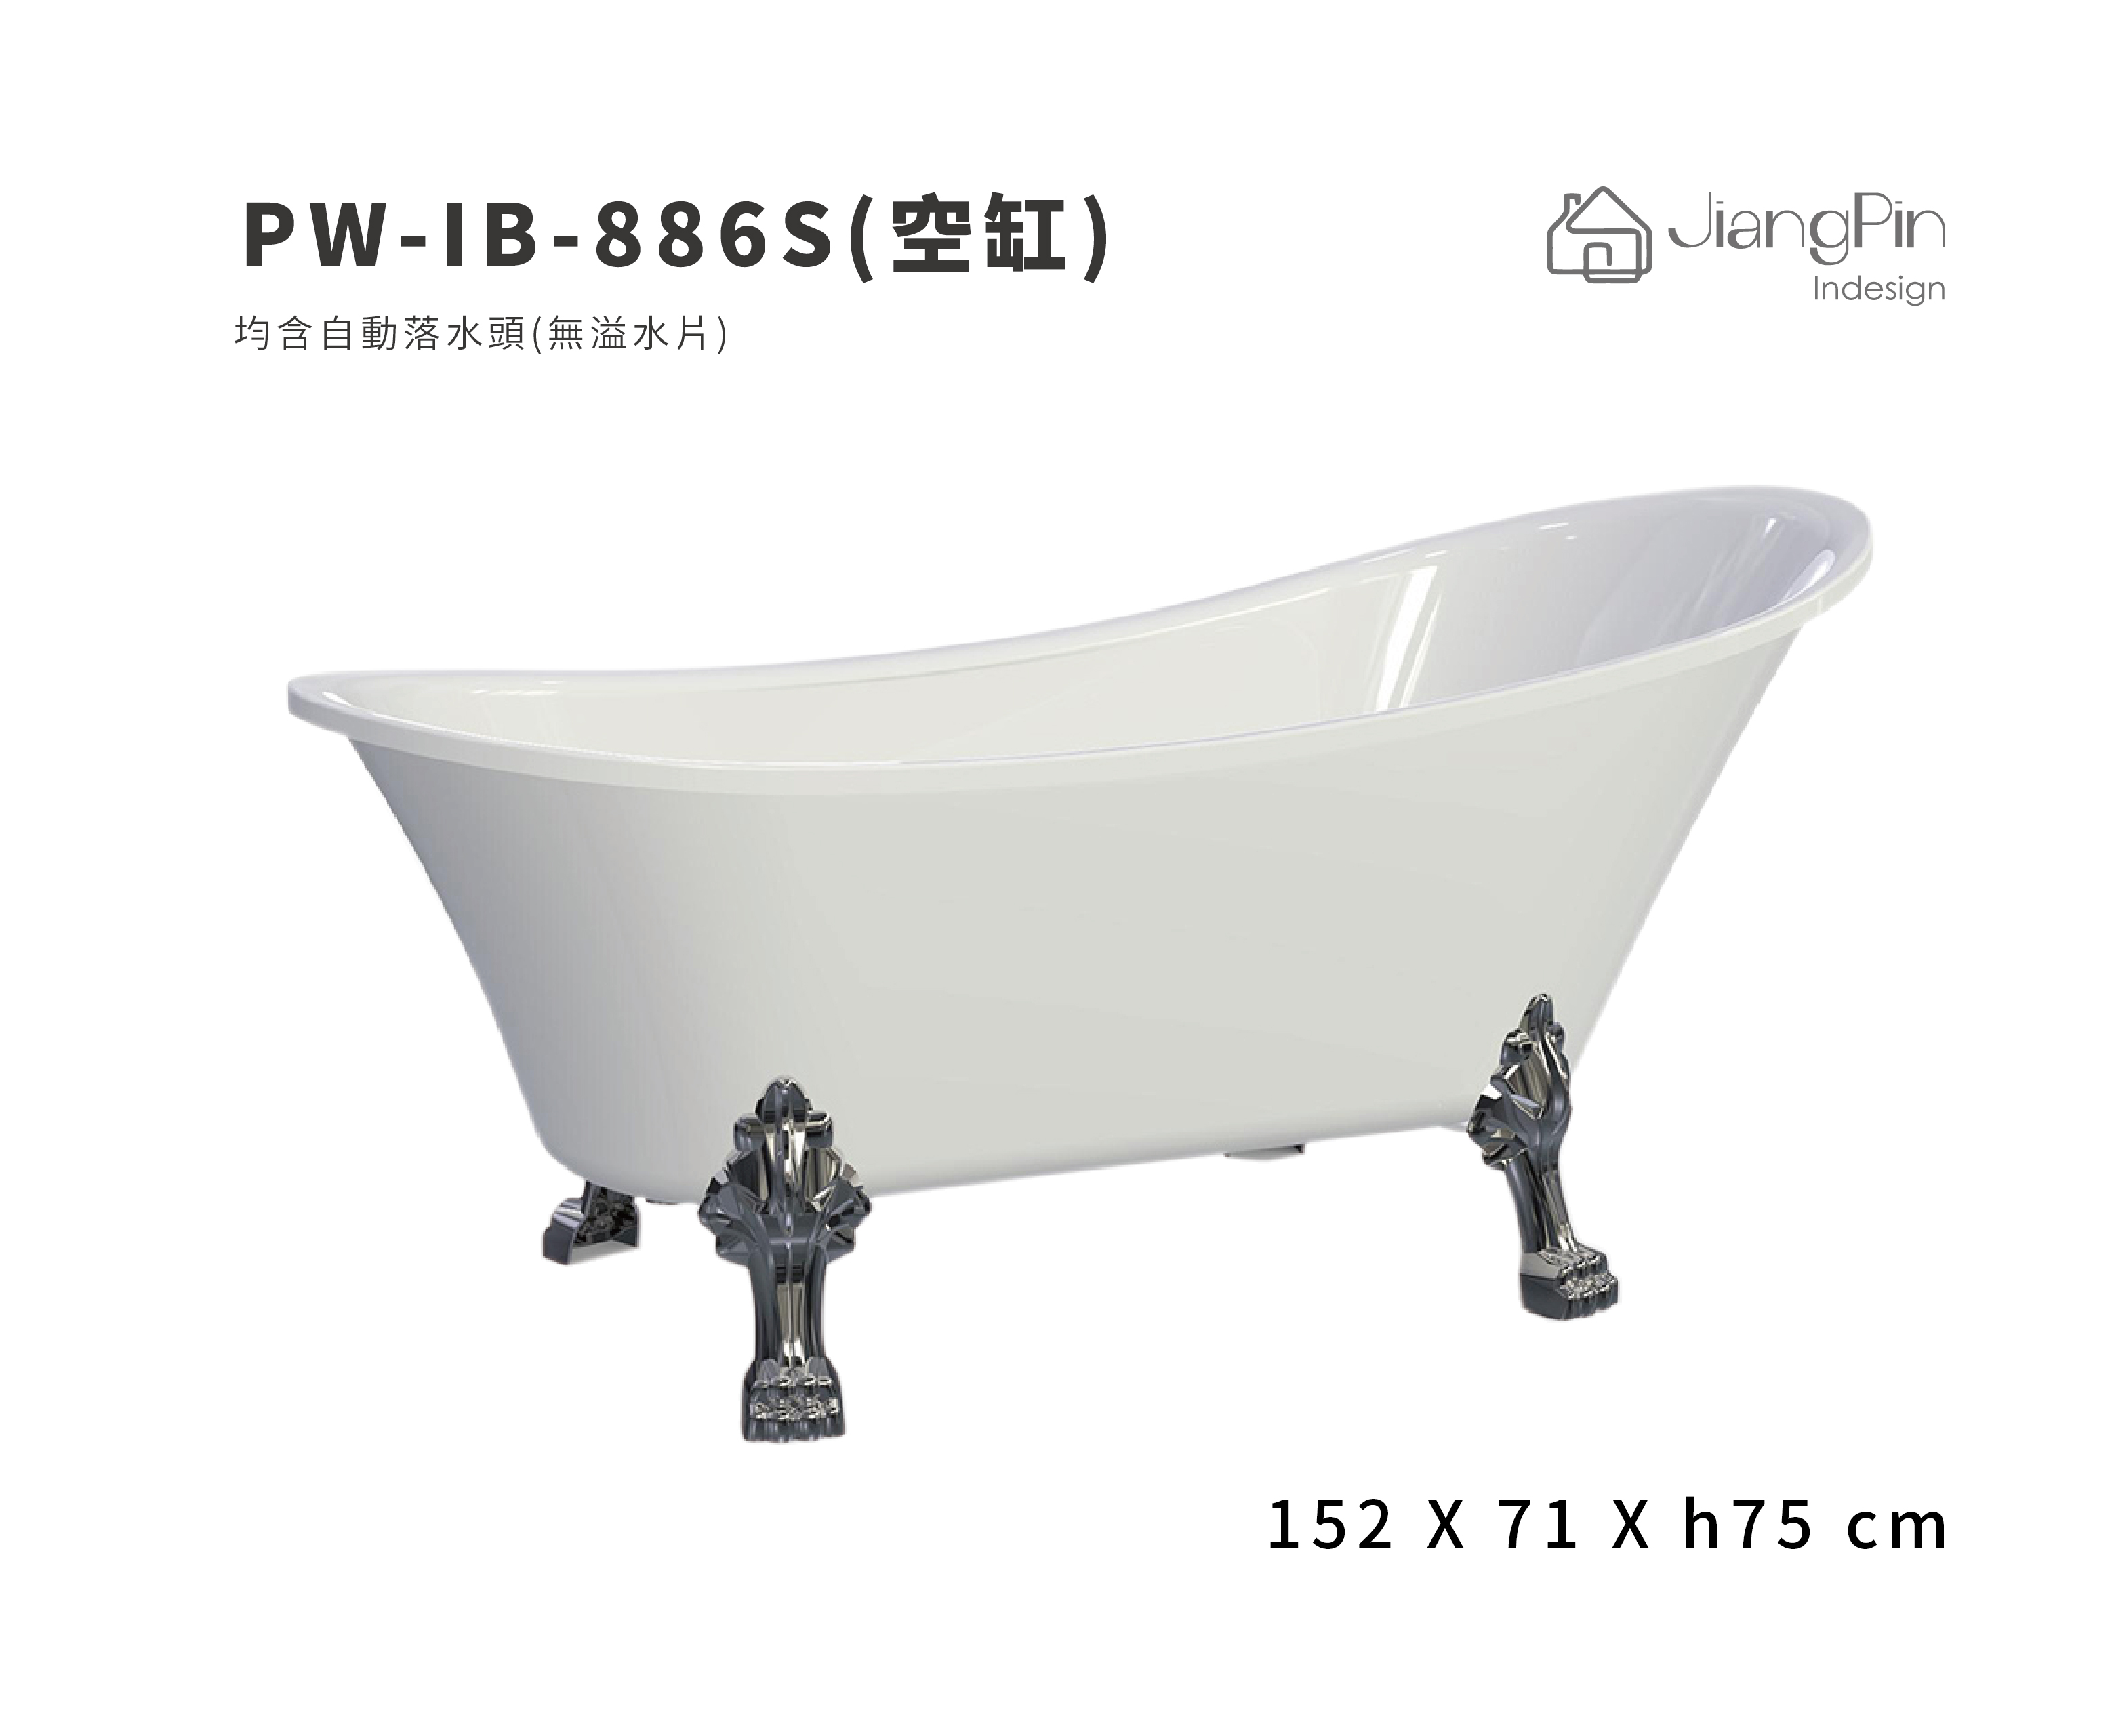 PW-IB-886S( 空缸) 壓克力浴缸-無溢水片 152cm